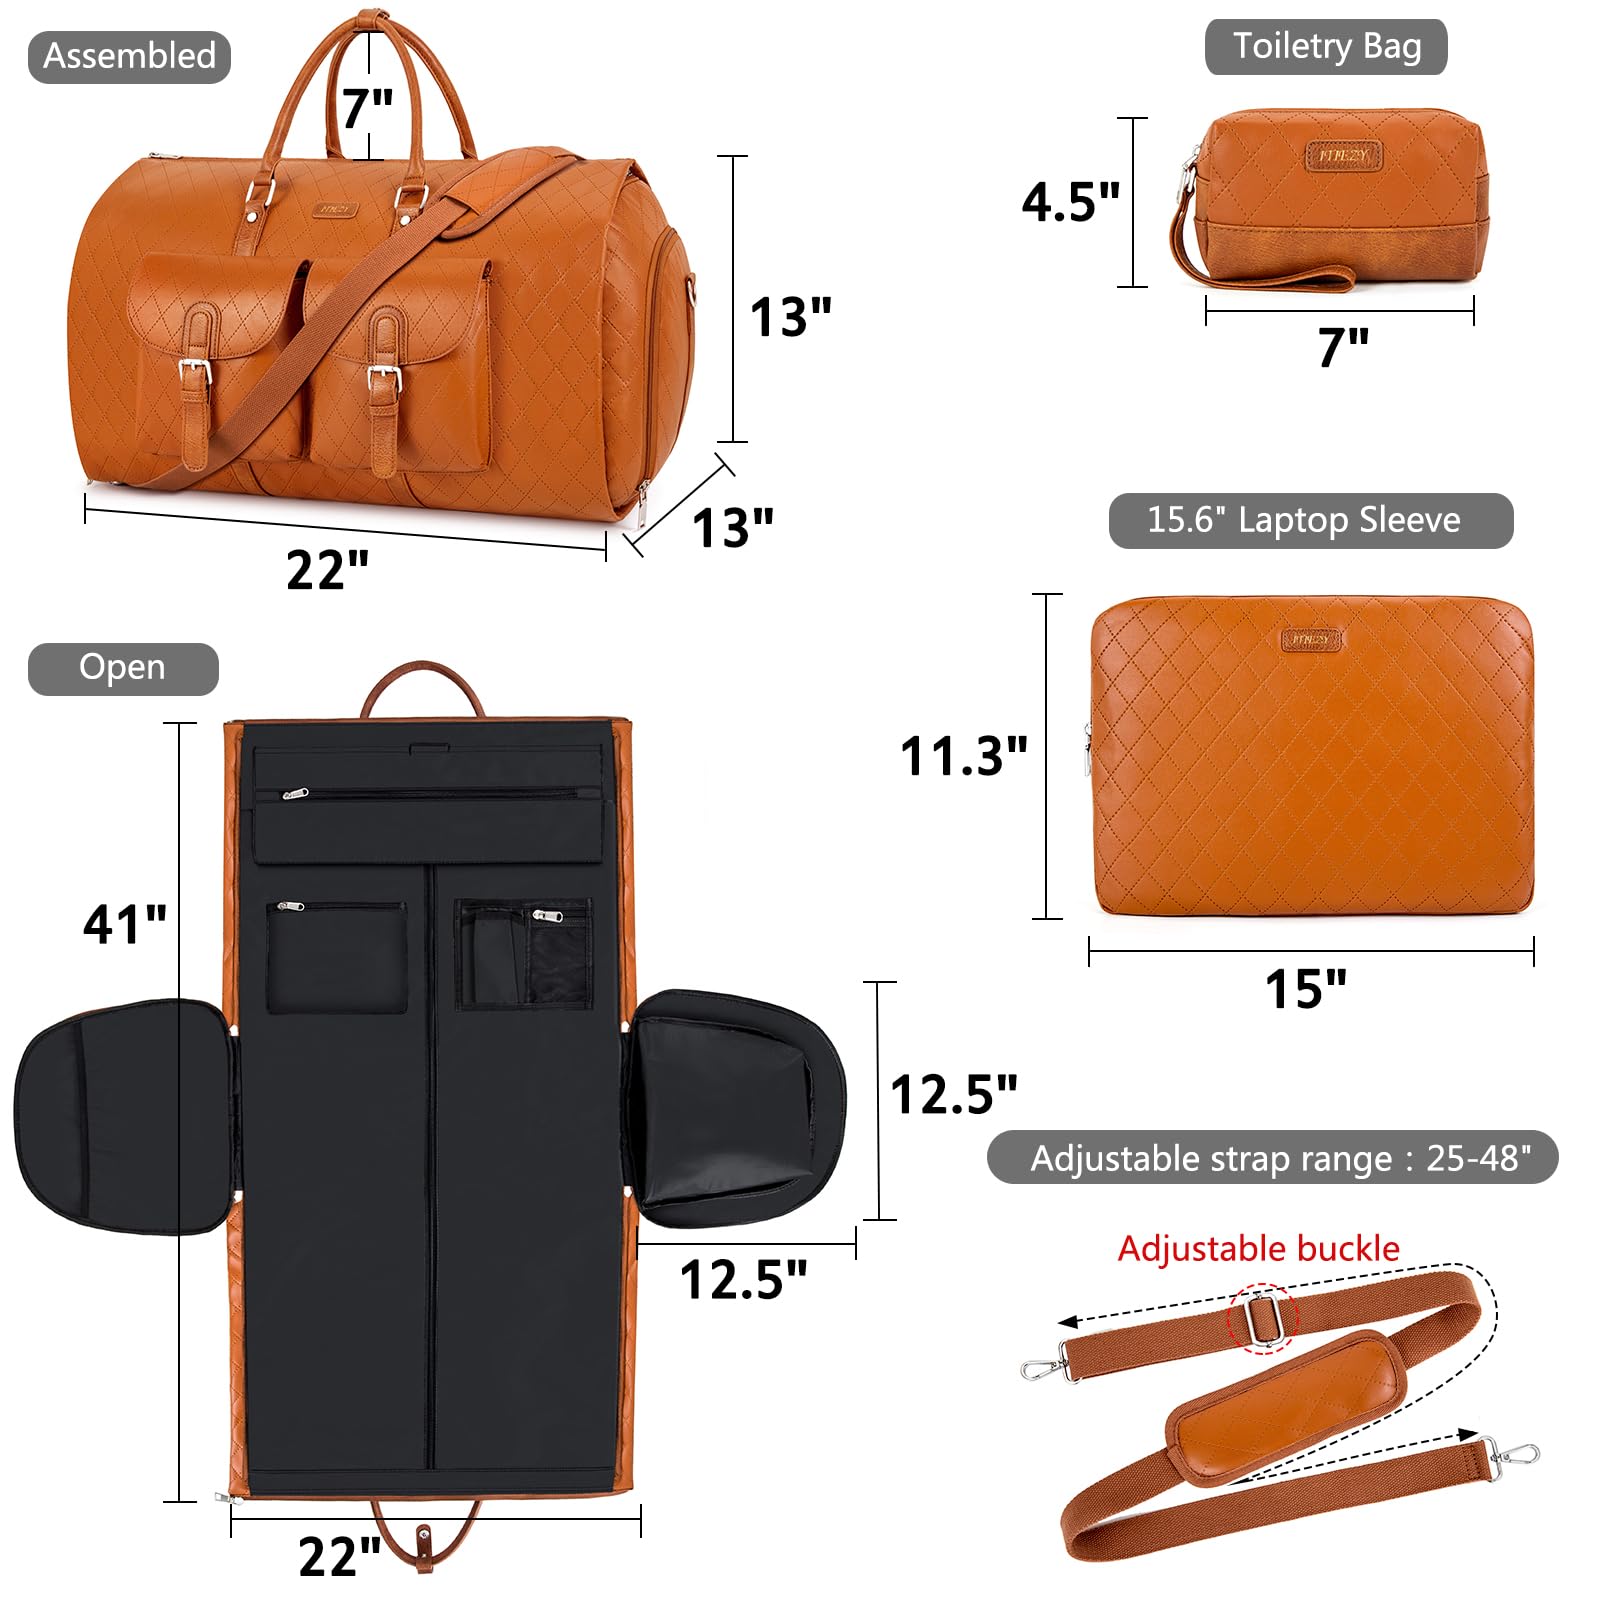 Leather Duffle Bag-IZ0301